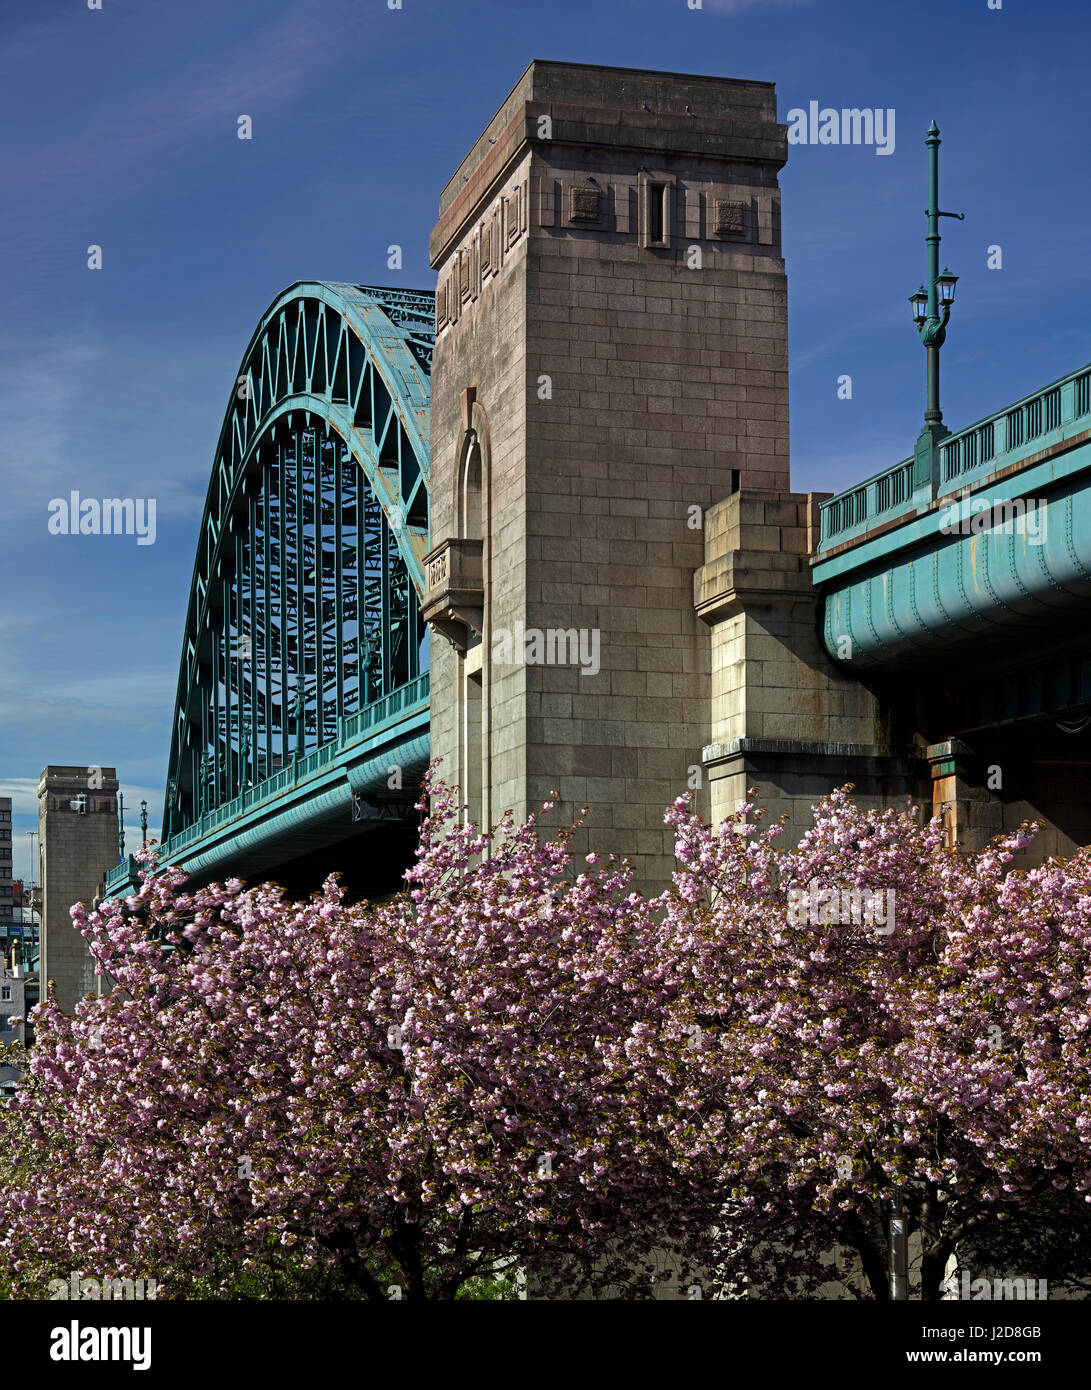 Tagsüber Blick auf die Tyne Bridge vor blauem Himmel Sommerzeit in Newcastle Upon Tyne, North East England, Vereinigtes Königreich Stockfoto